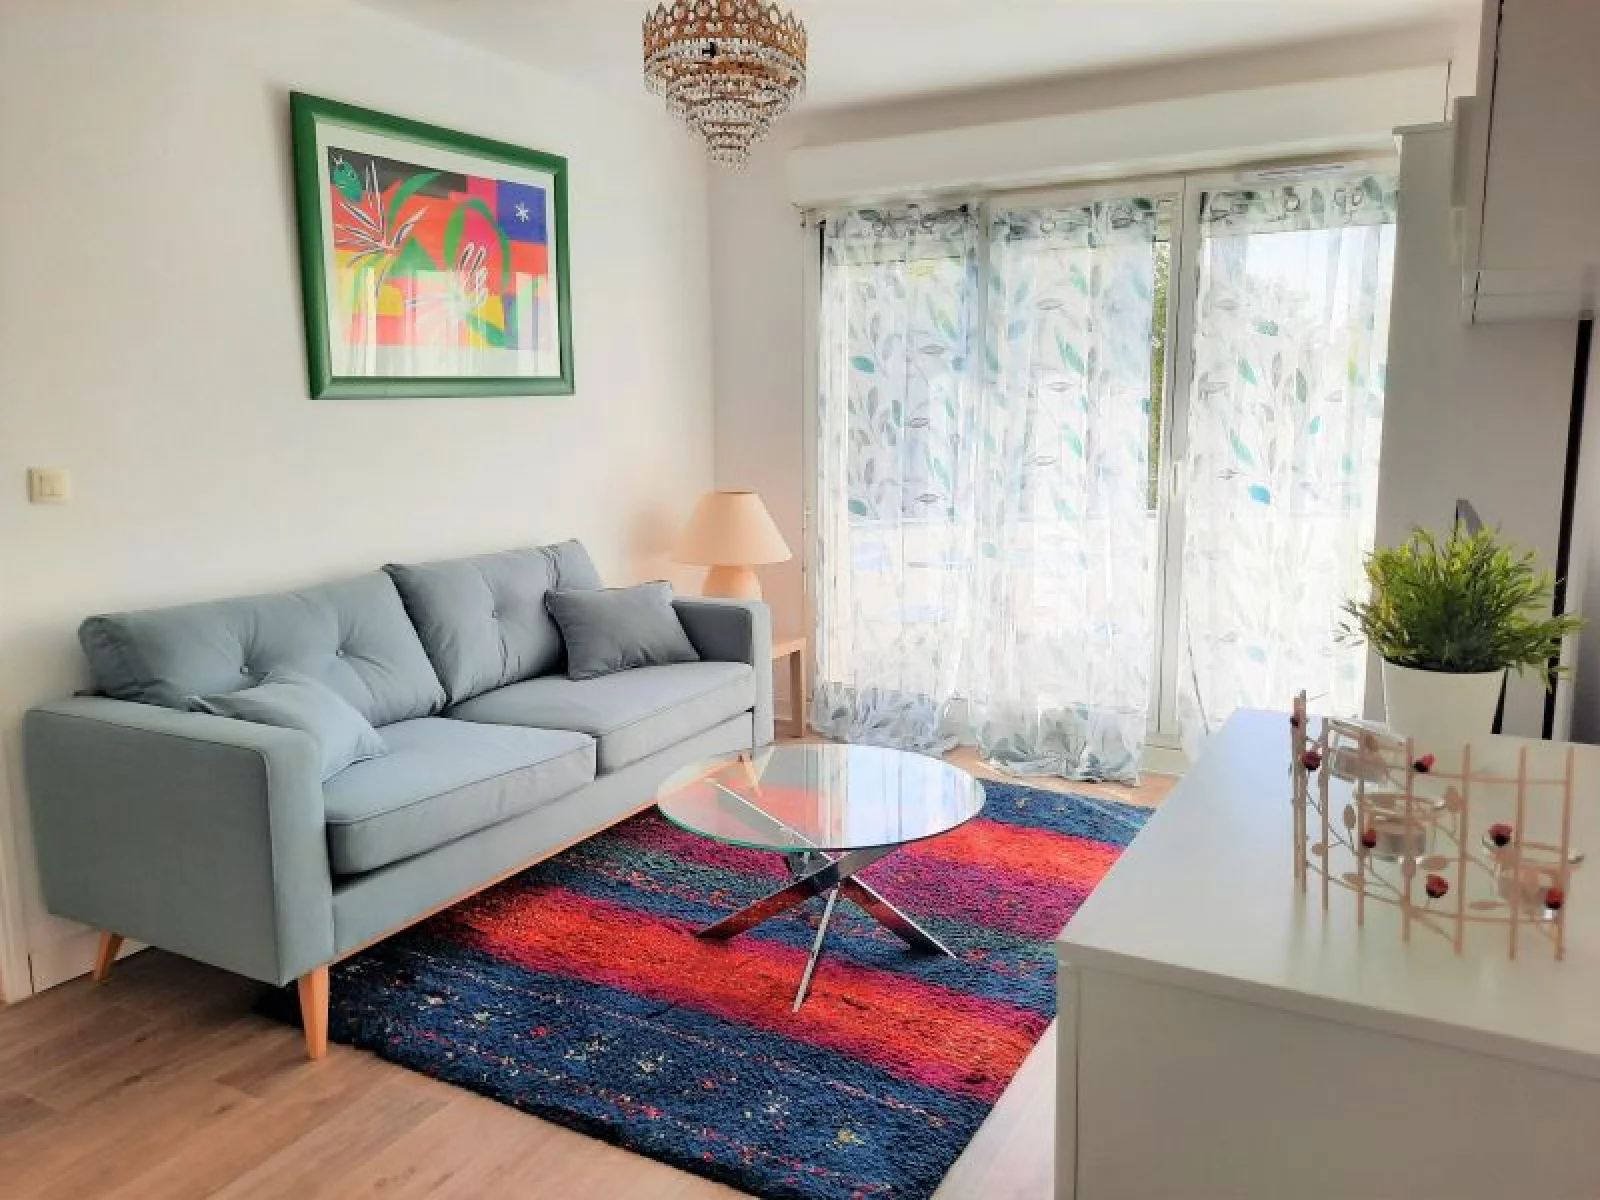 Location appartement meublé 2 pièces 36m² (Bordeaux - Caudéran)